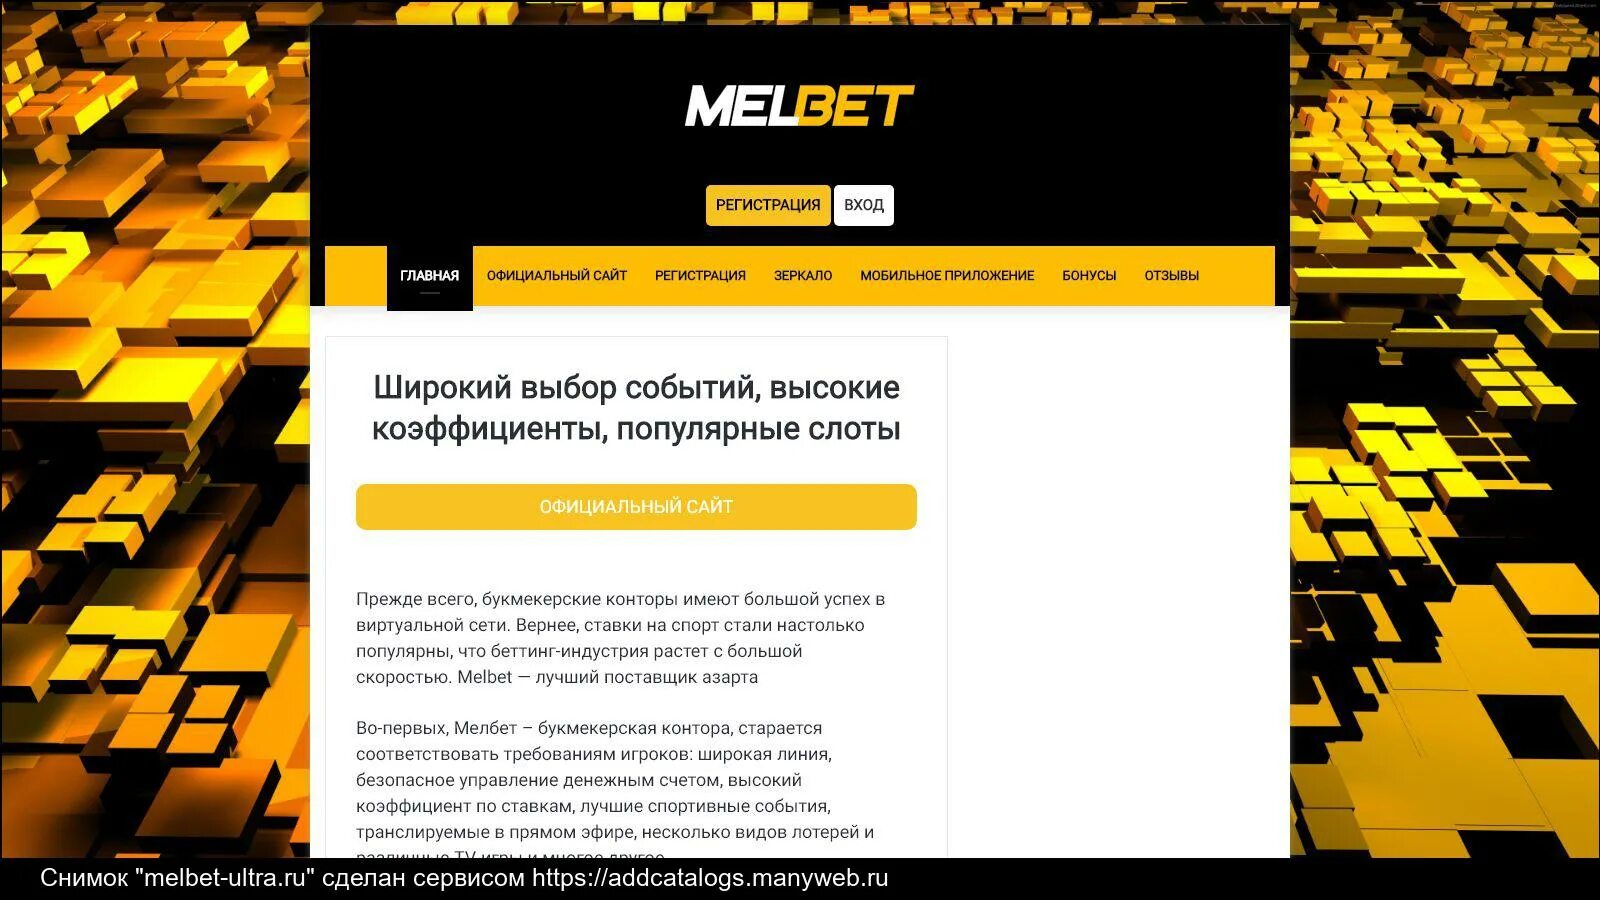 Melbet сайт melbet casino bk pp ru. Melbet. Melbet приложение. Мелбет букмекерская контора. Melbet отзывы.